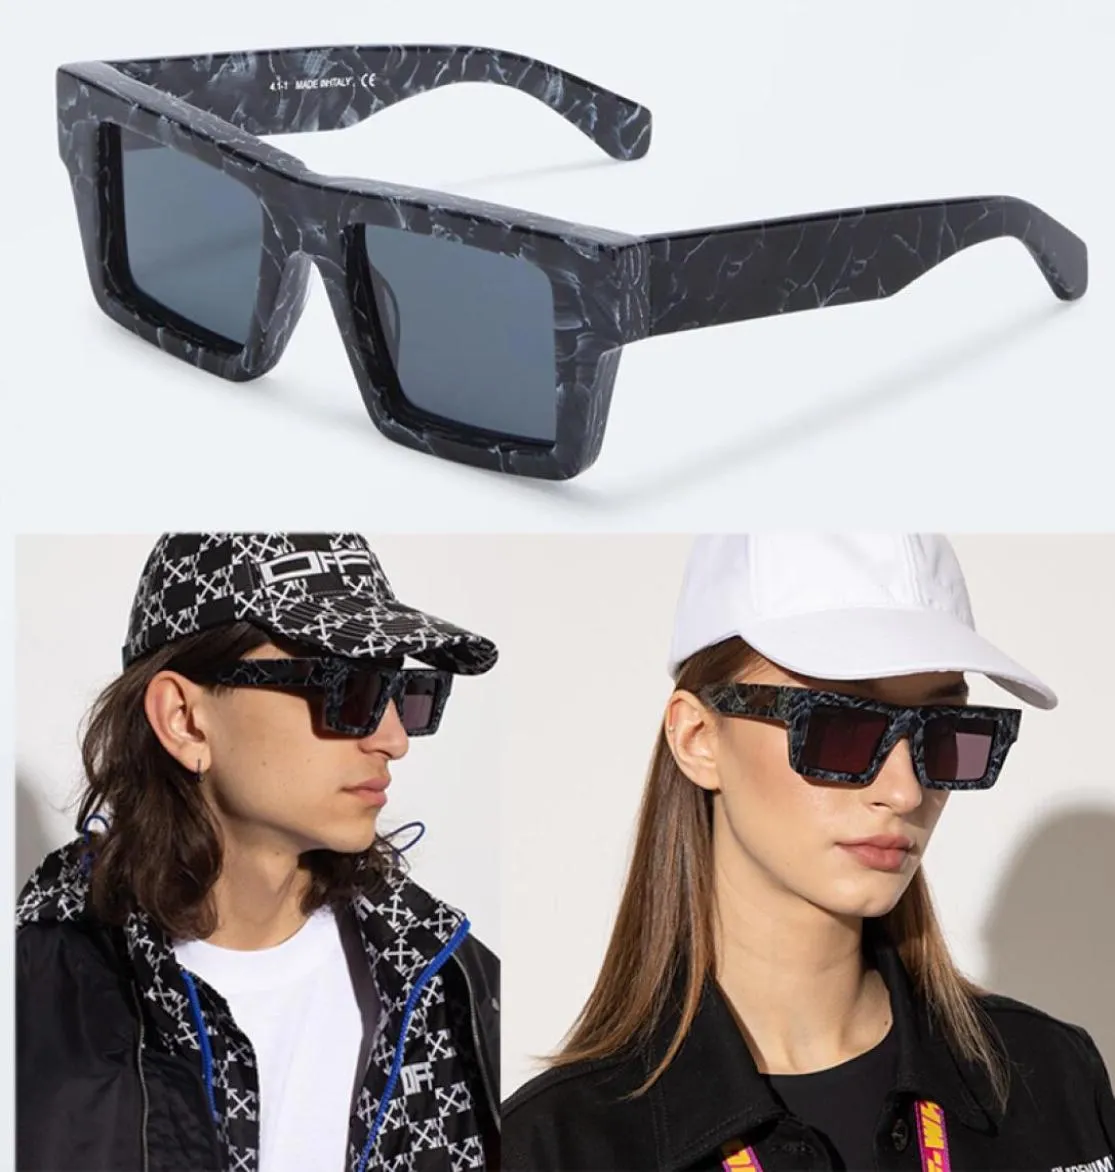 Style rectangulaire Nassau hommes dames lunettes de soleil OMRI028 contour des yeux de chat coupe classique lunettes de soleil en acétate noir de qualité supérieure avec 7831611